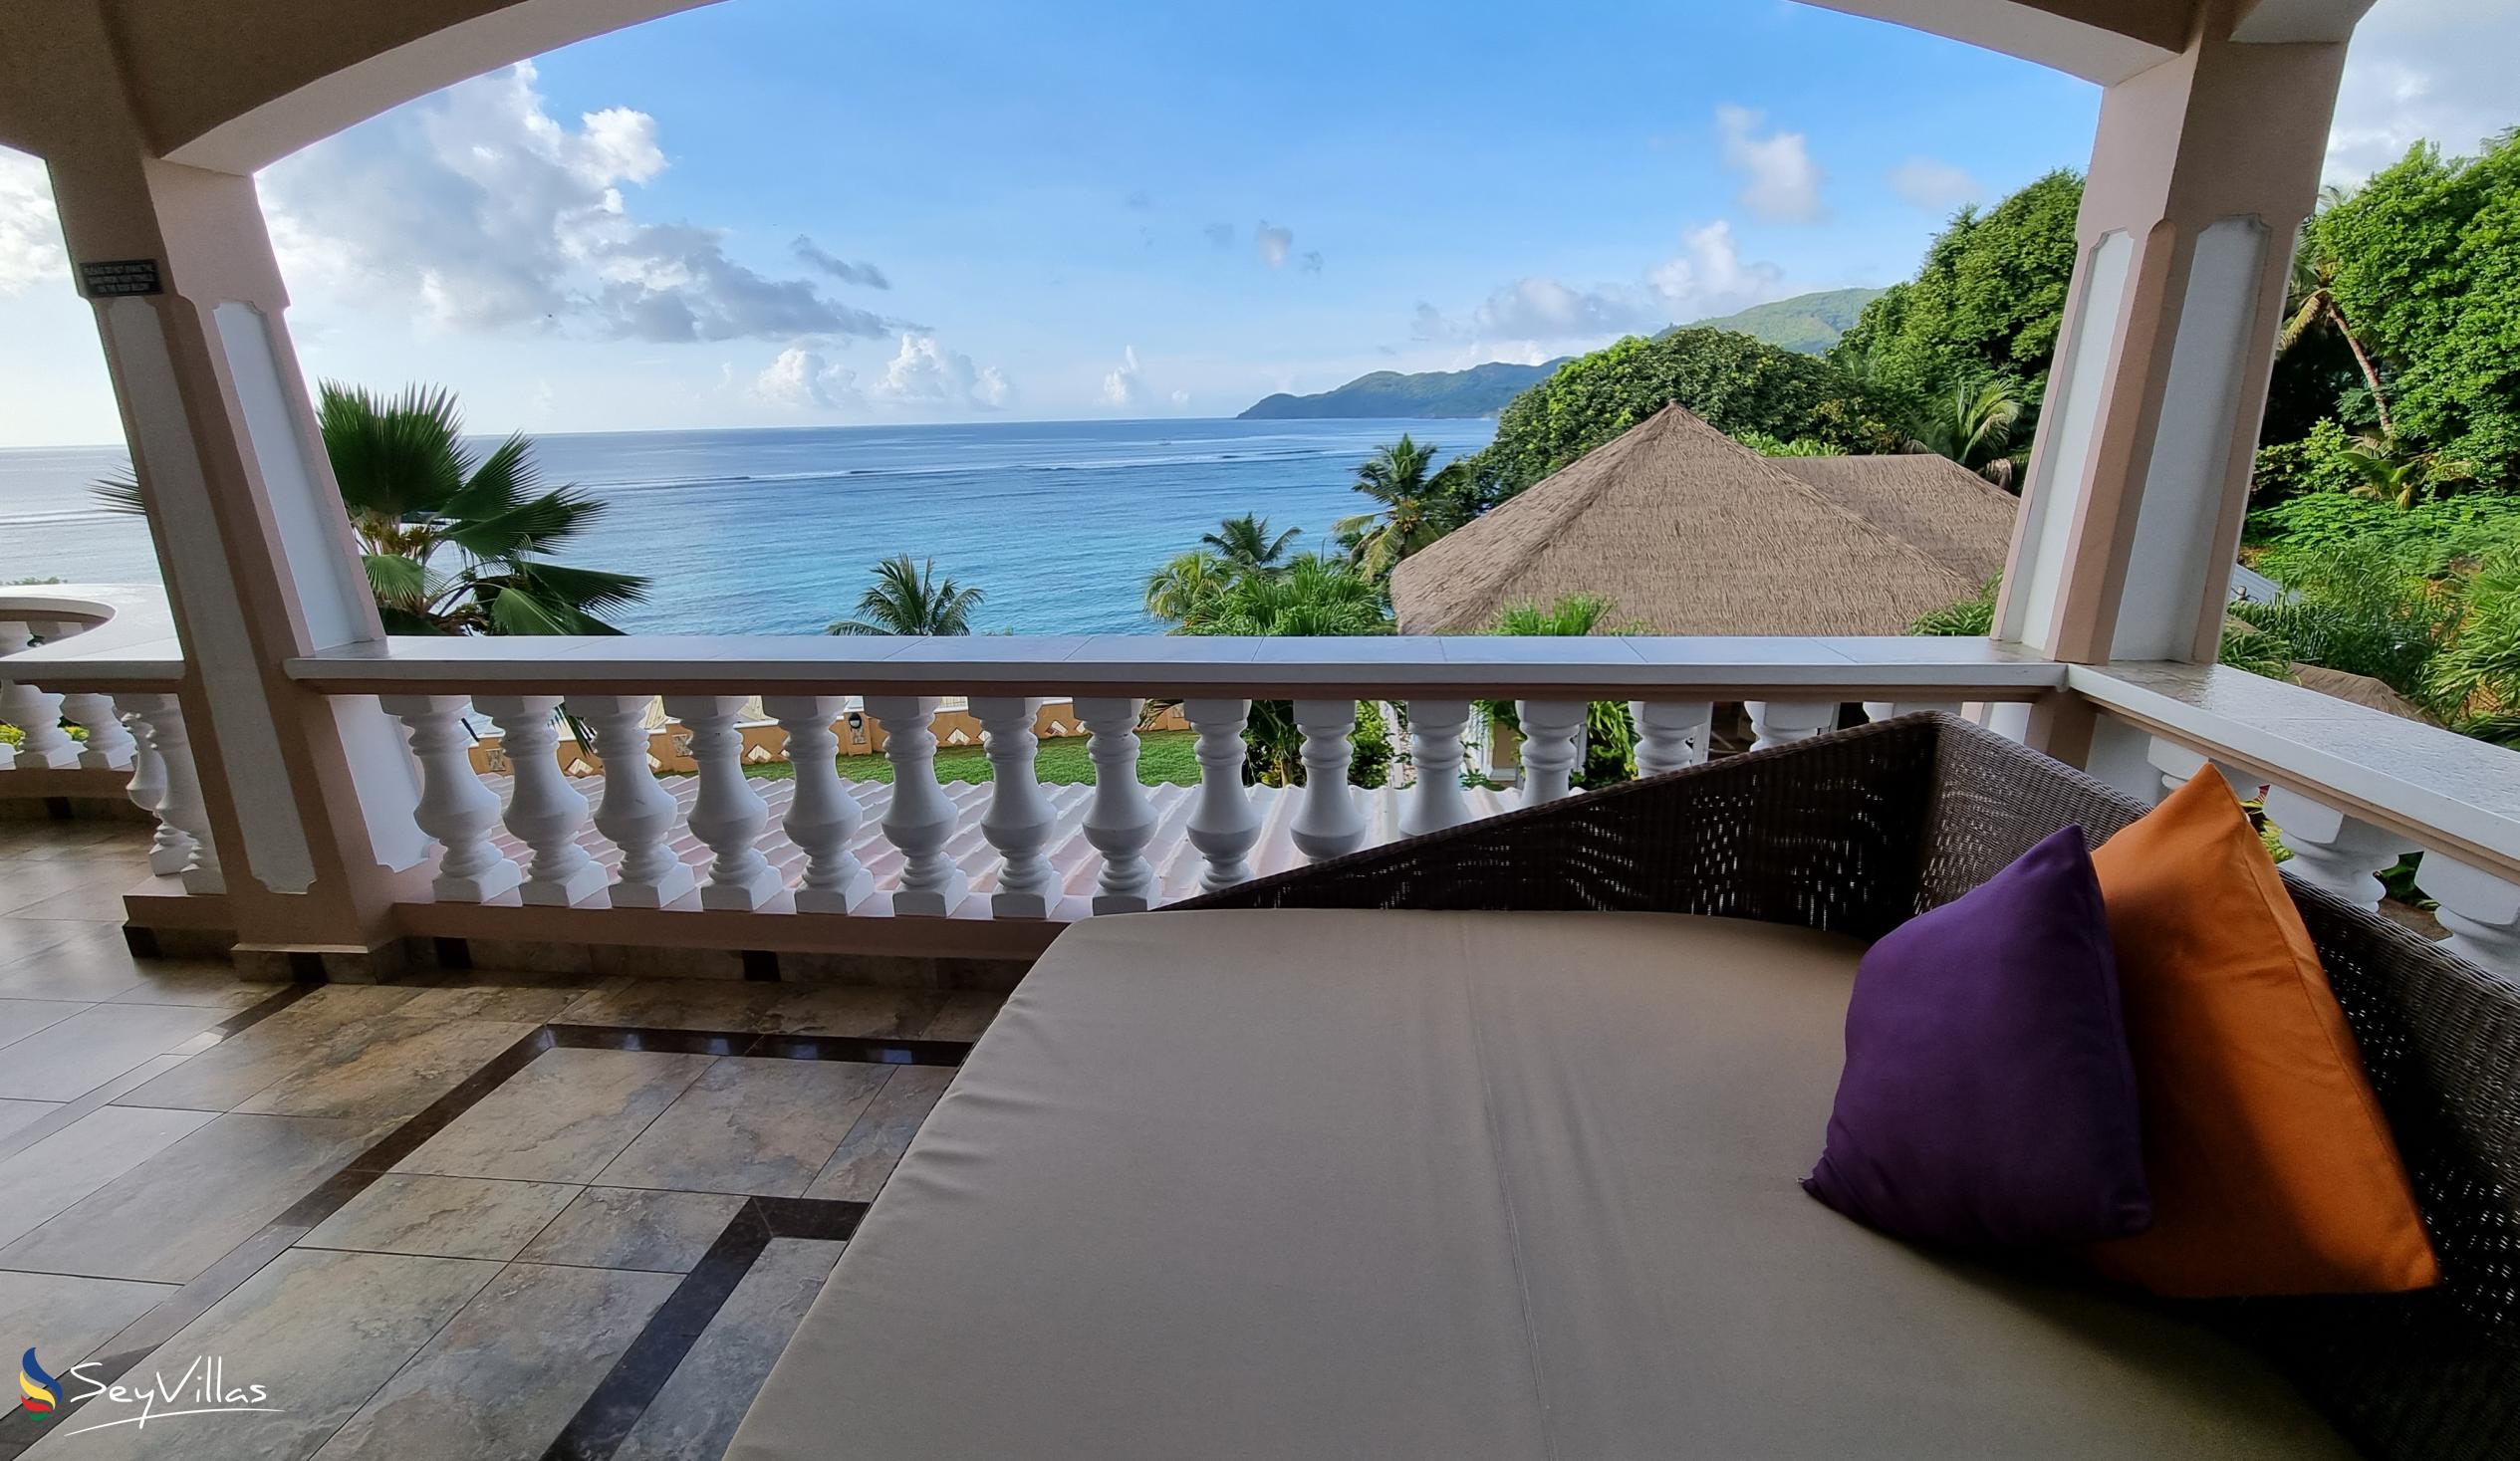 Foto 89: Au Fond de Mer View - Appartement 2 chambres avec vue sur la mer - Mahé (Seychelles)